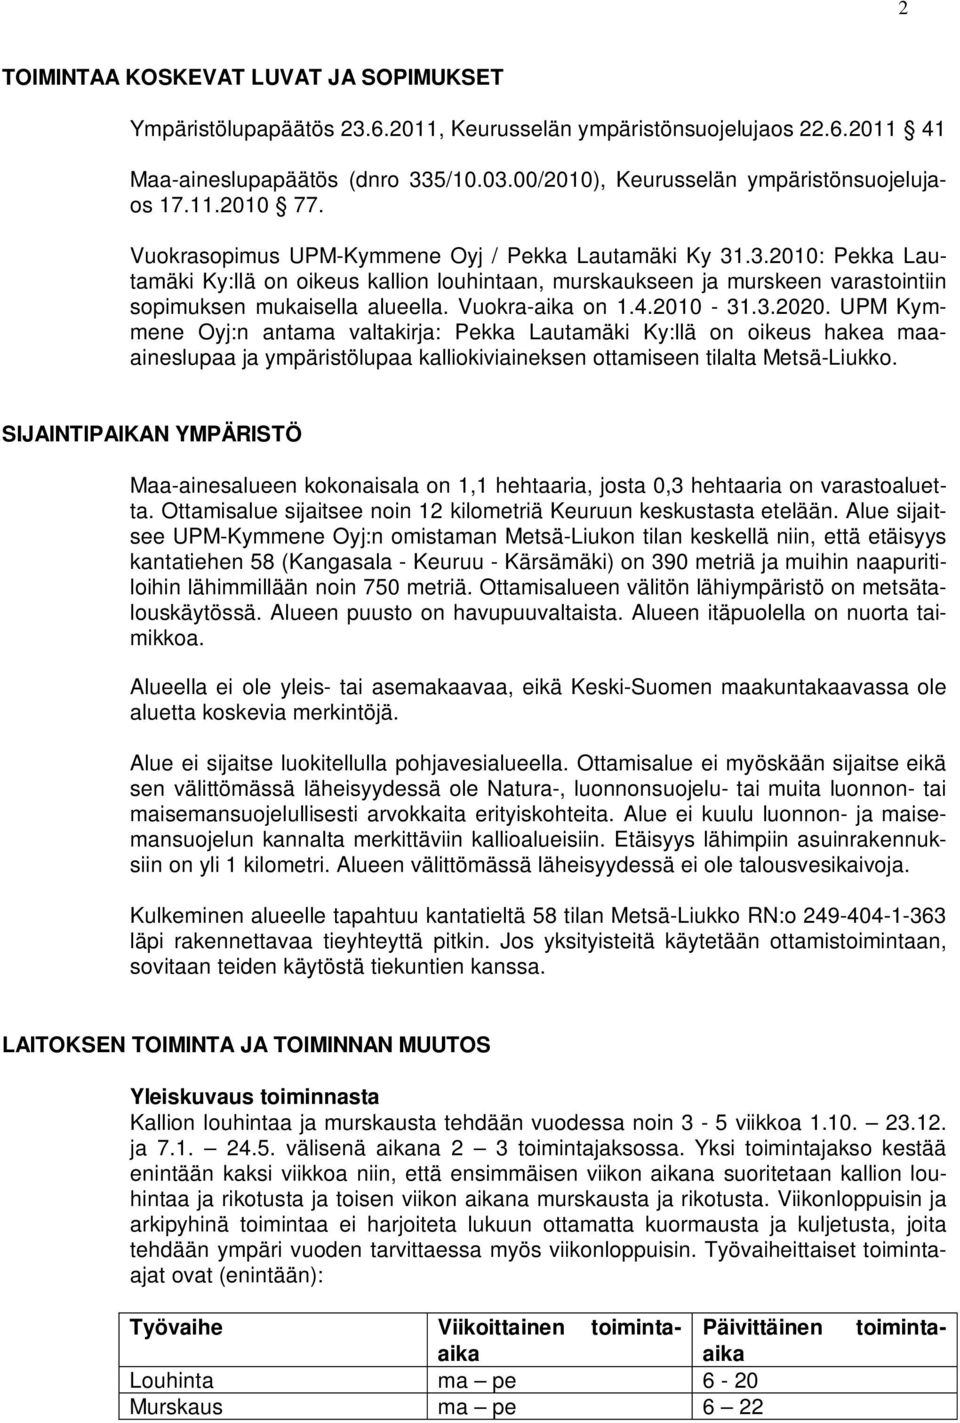 .3.2010: Pekka Lautamäki Ky:llä on oikeus kallion louhintaan, murskaukseen ja murskeen varastointiin sopimuksen mukaisella alueella. Vuokra-aika on 1.4.2010-31.3.2020.